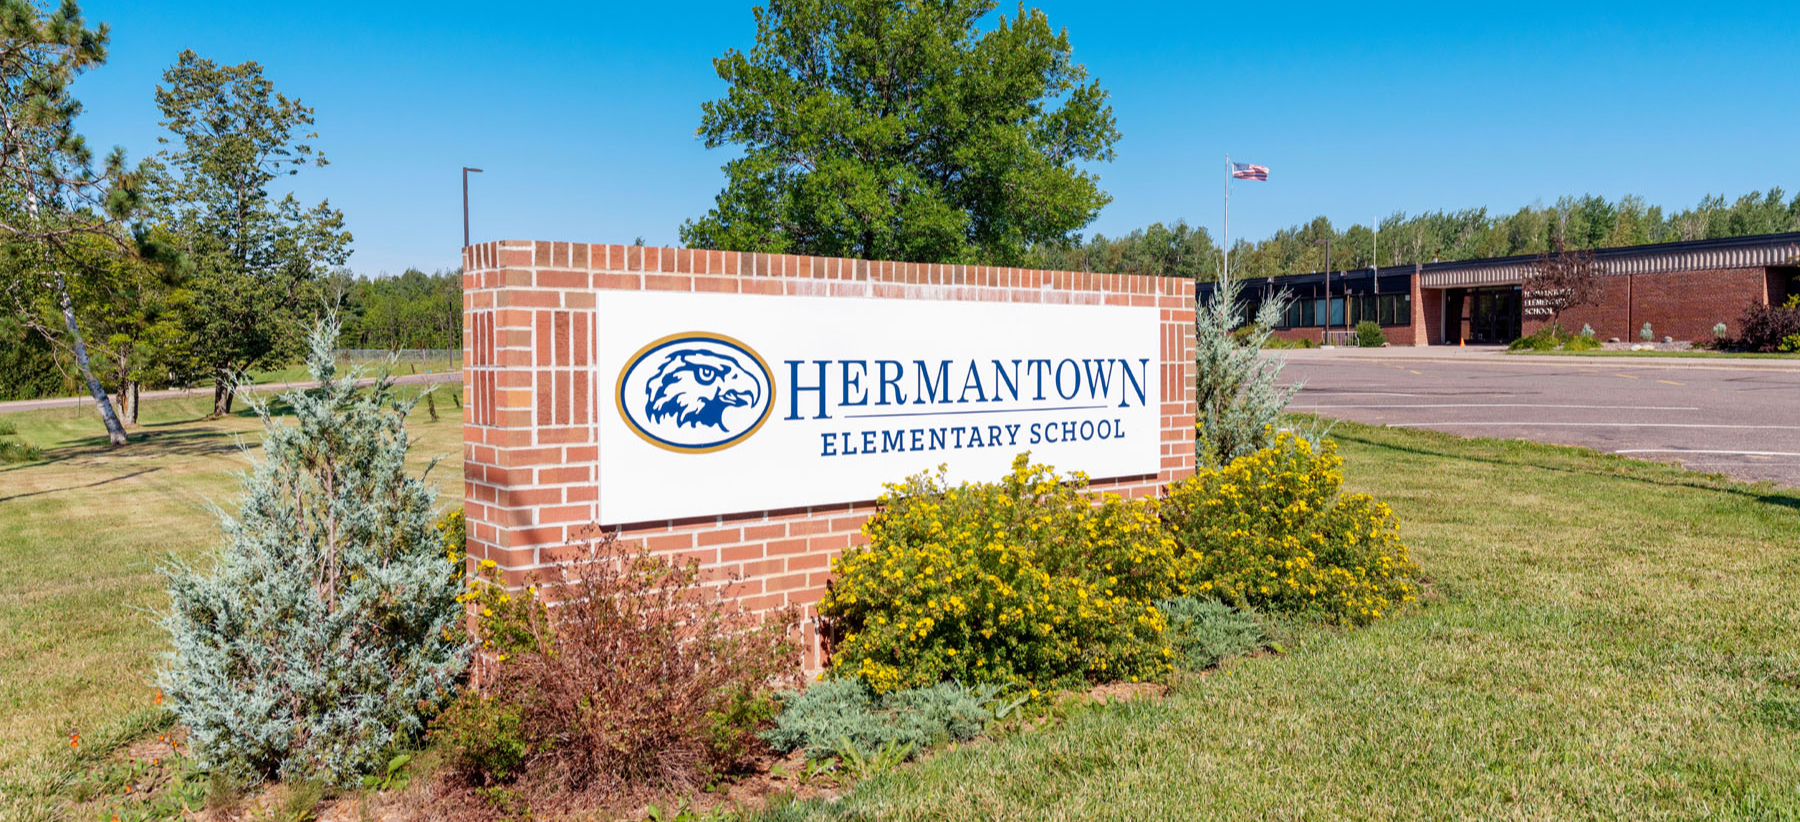 Hermantown Elementary